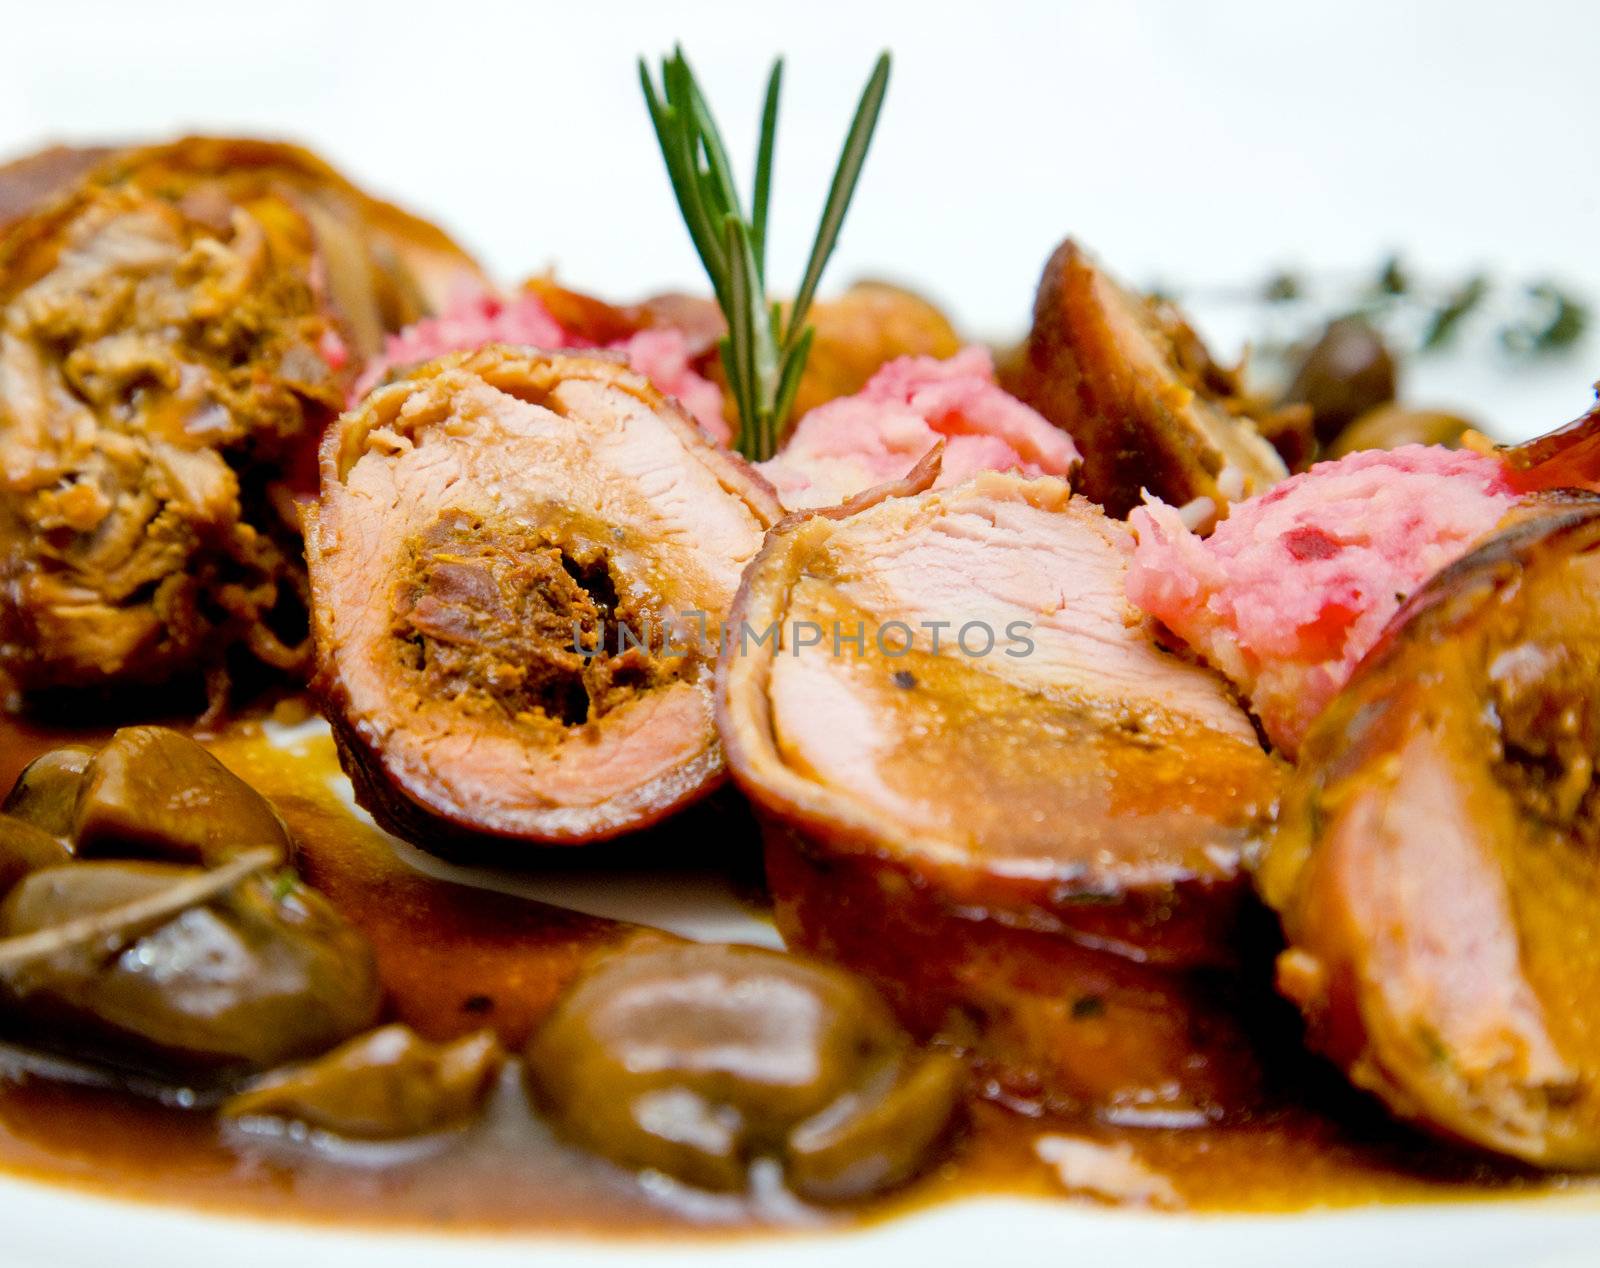 Pork fillet with sauce by vilevi